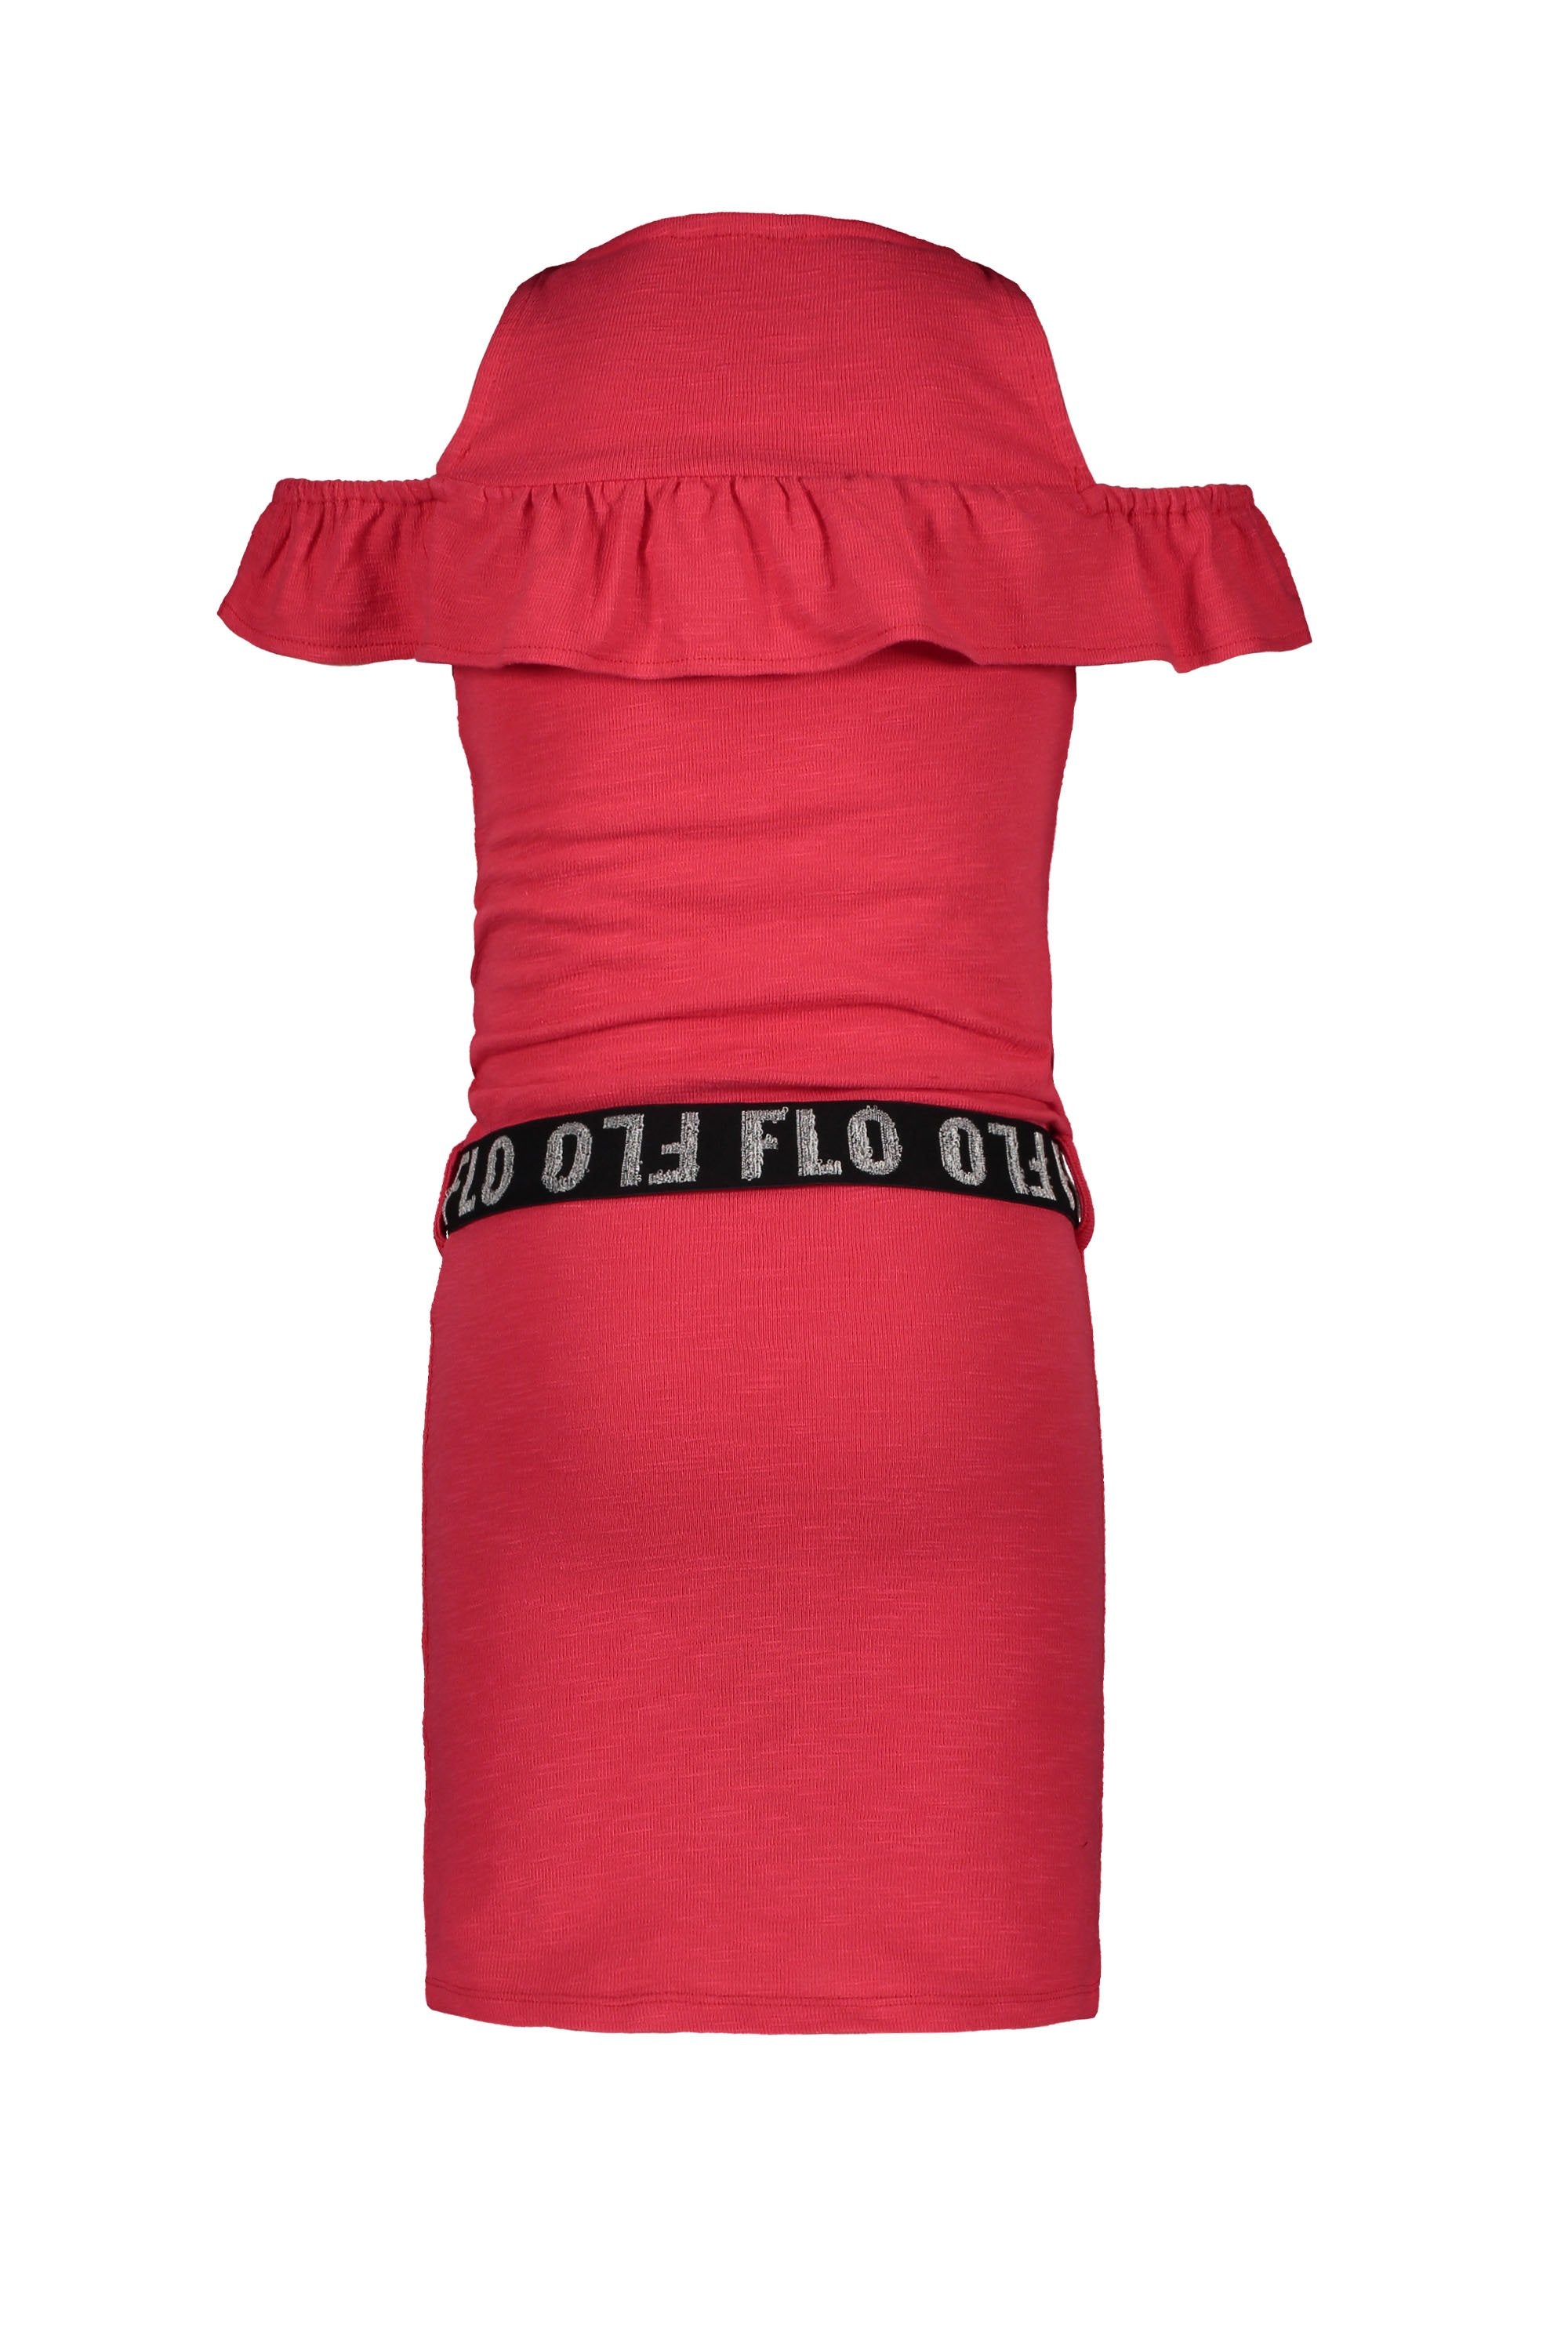 Meisjes Flo girls slub jersey ruffle dress van Flo in de kleur Cerise in maat 140.